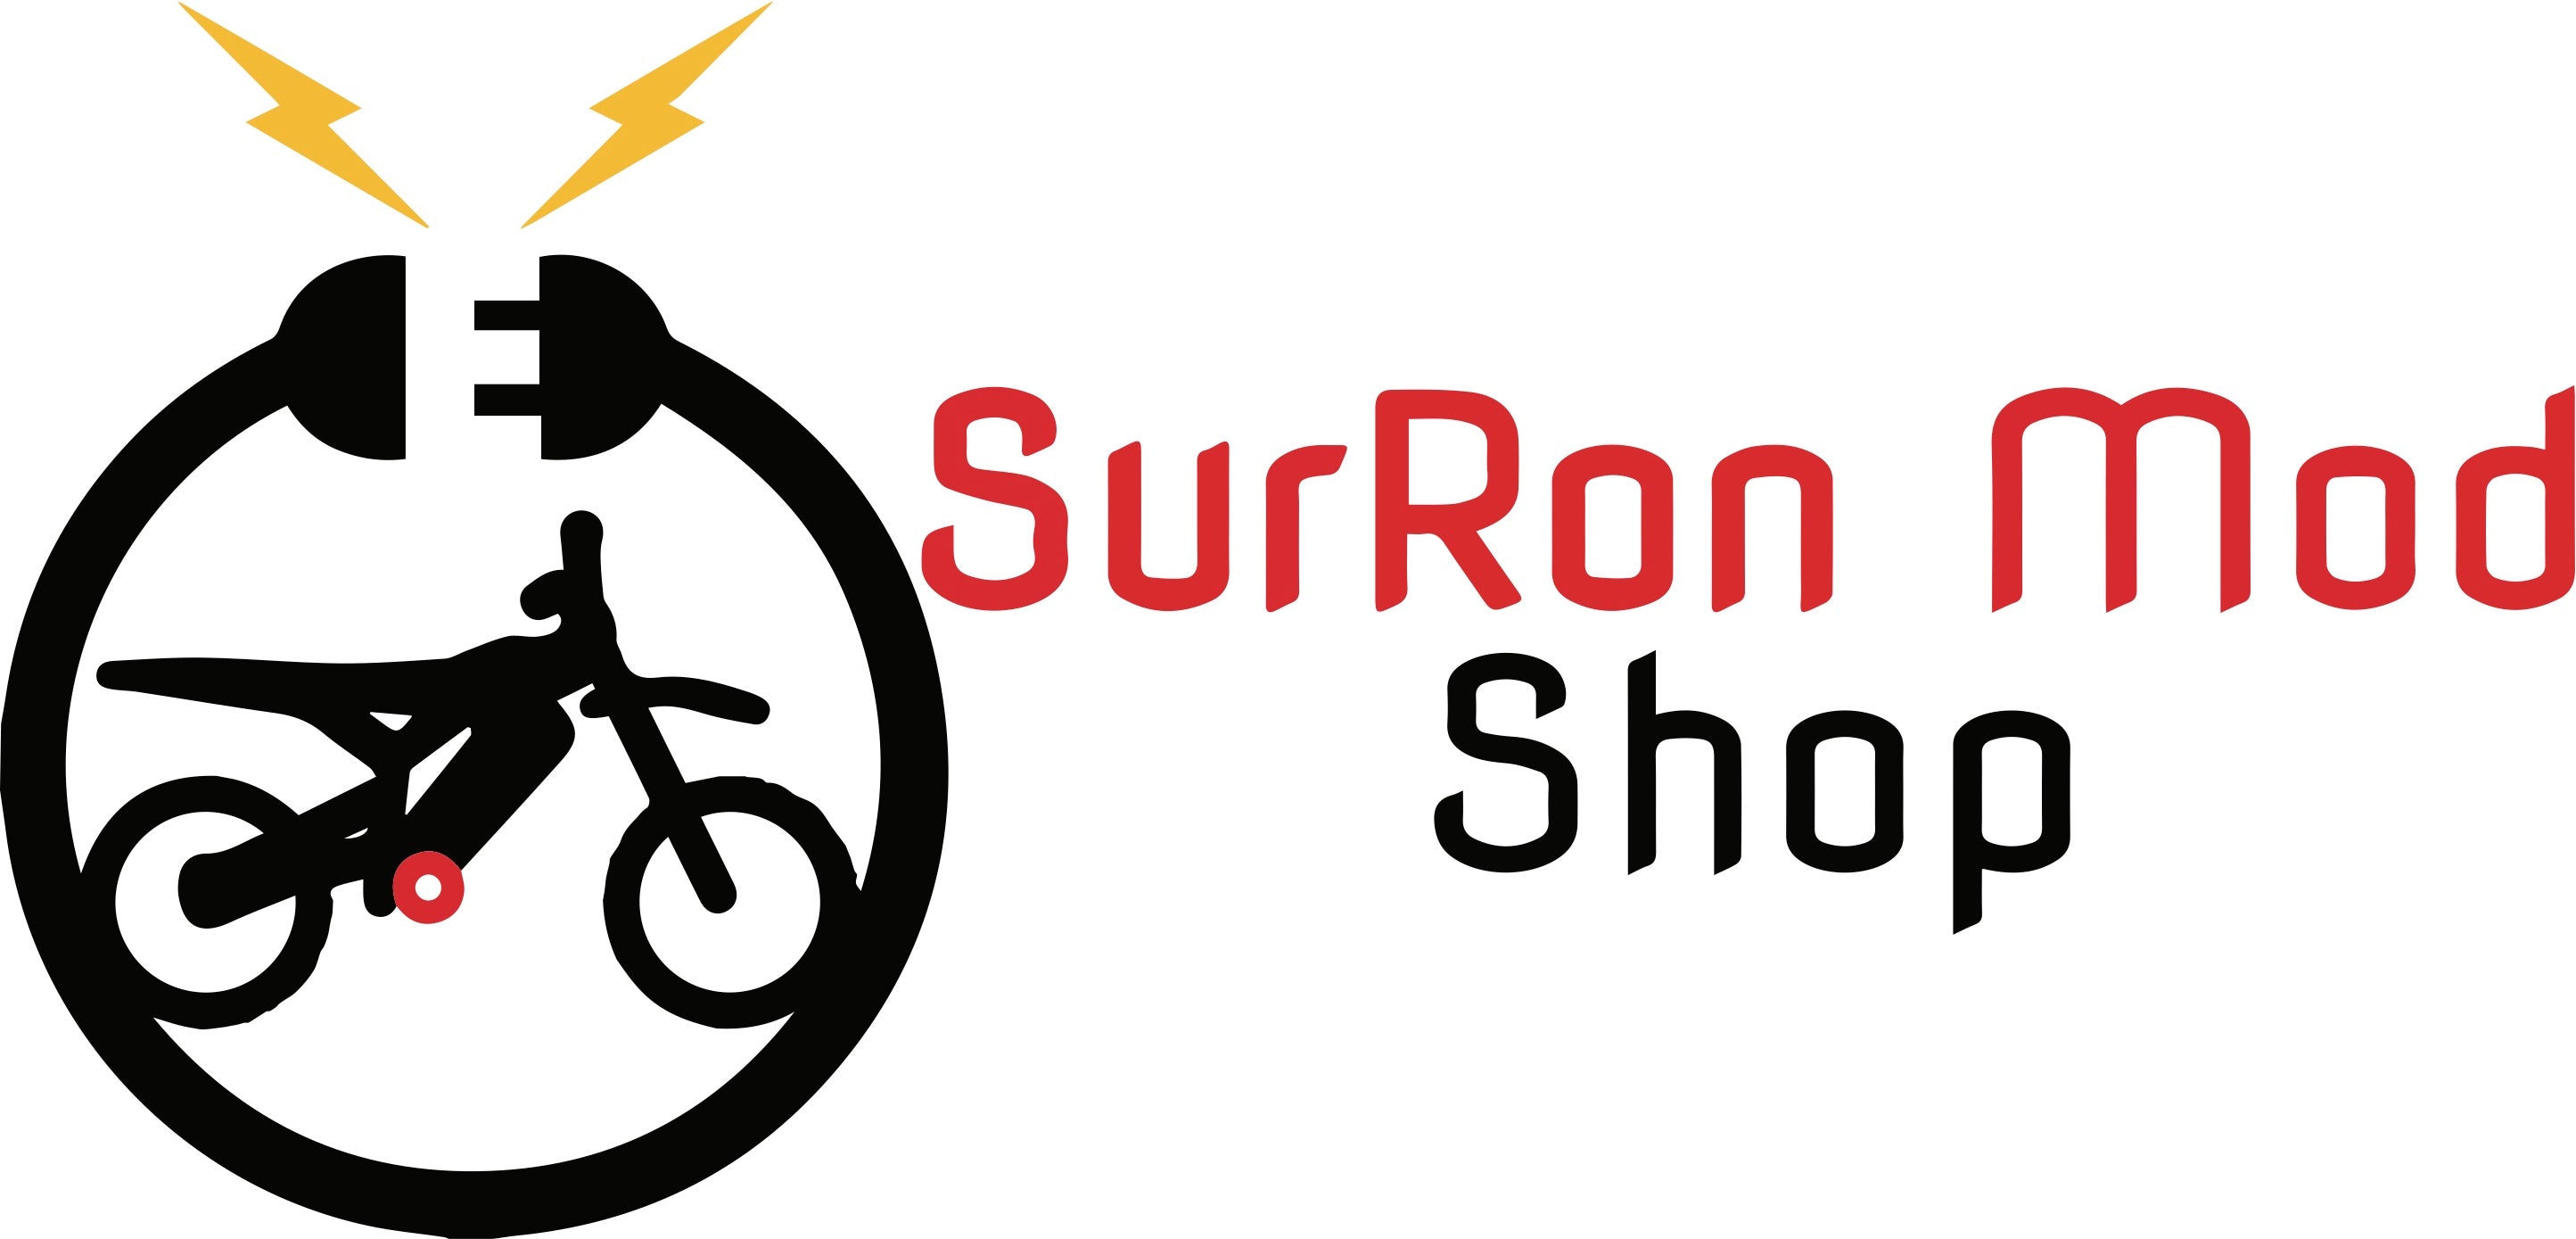 SurRon Mod Shop